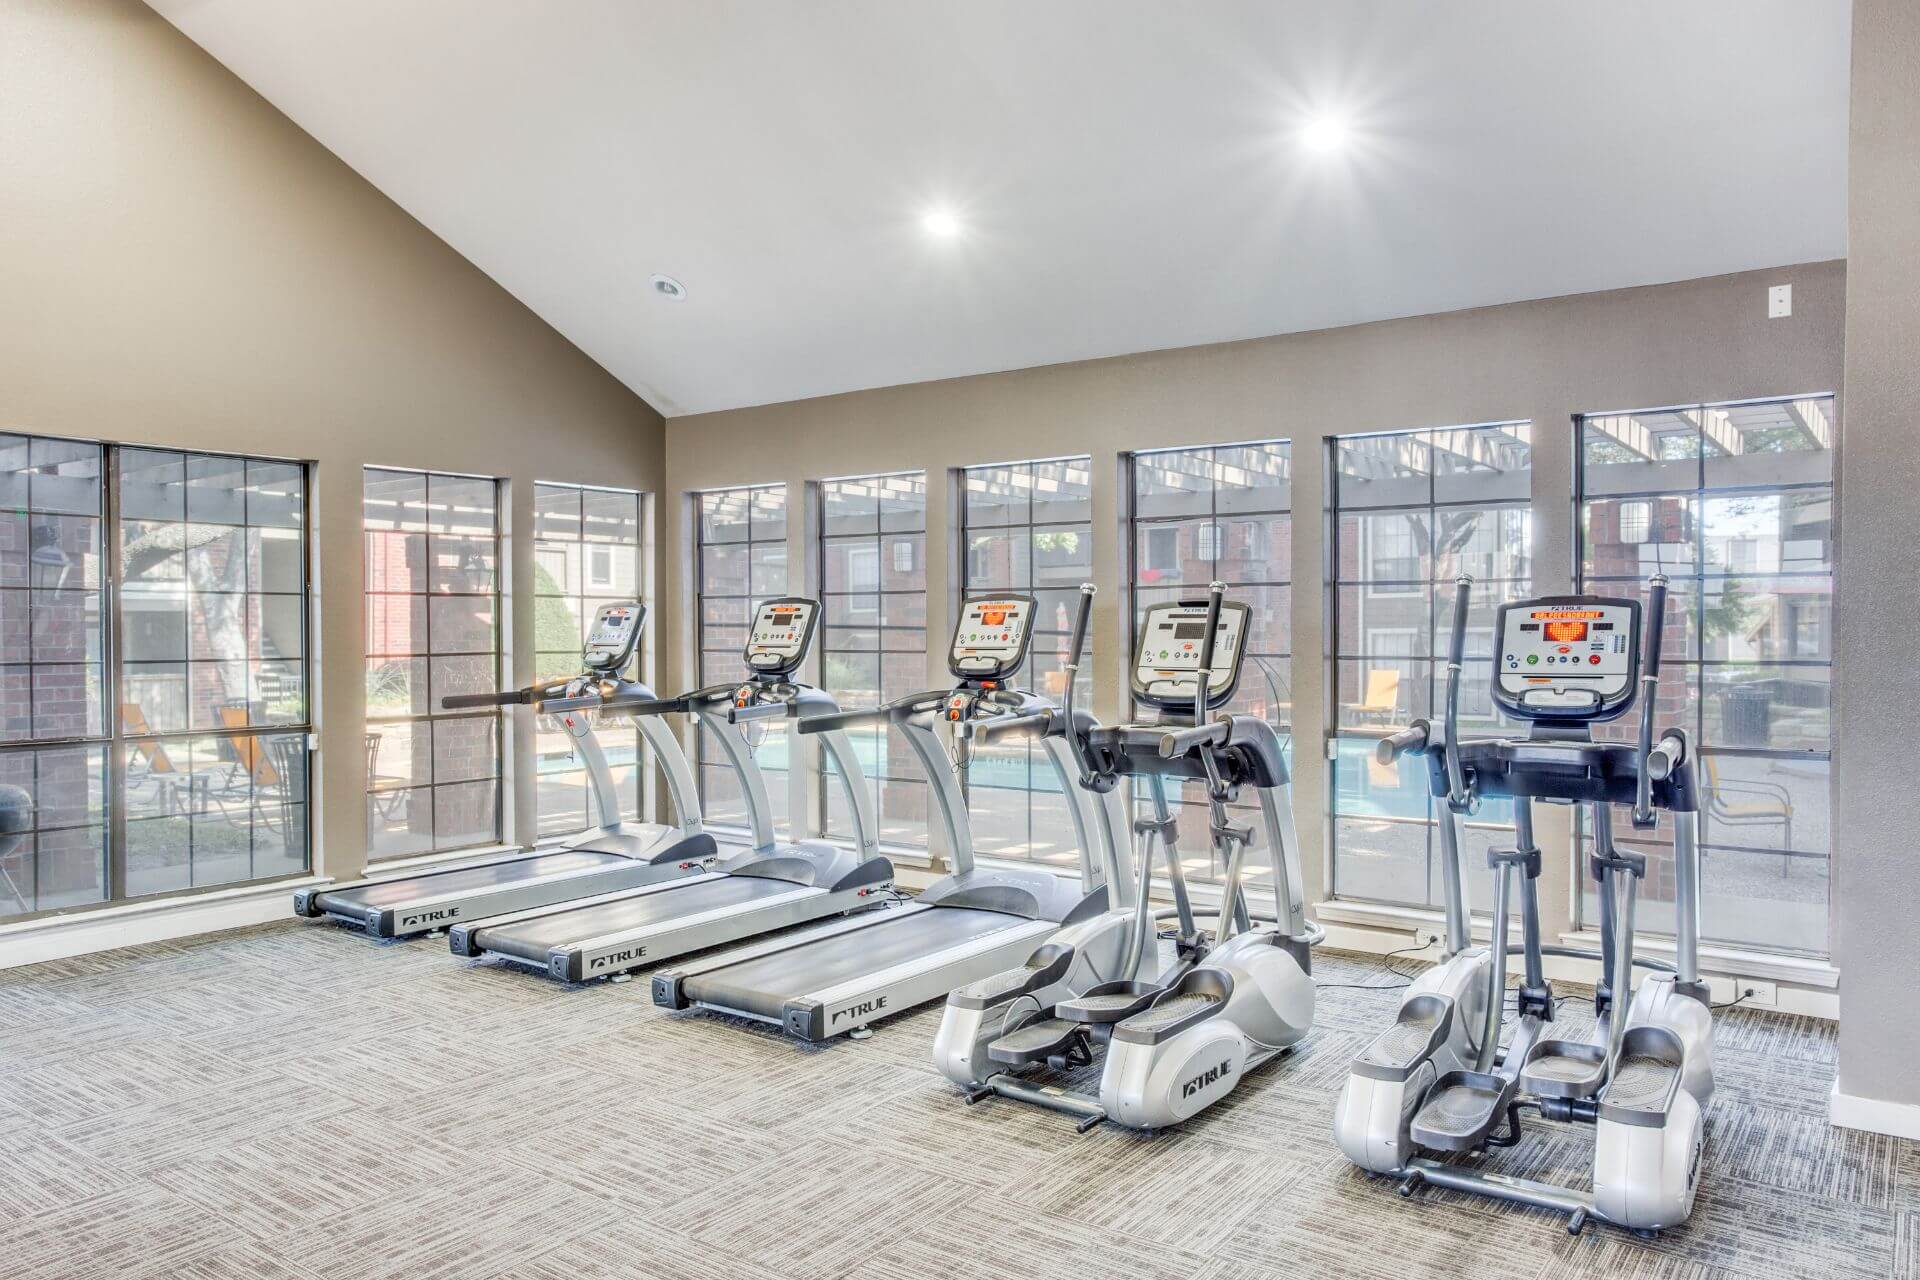 Fitness center | Gym | Cardio Strength Center